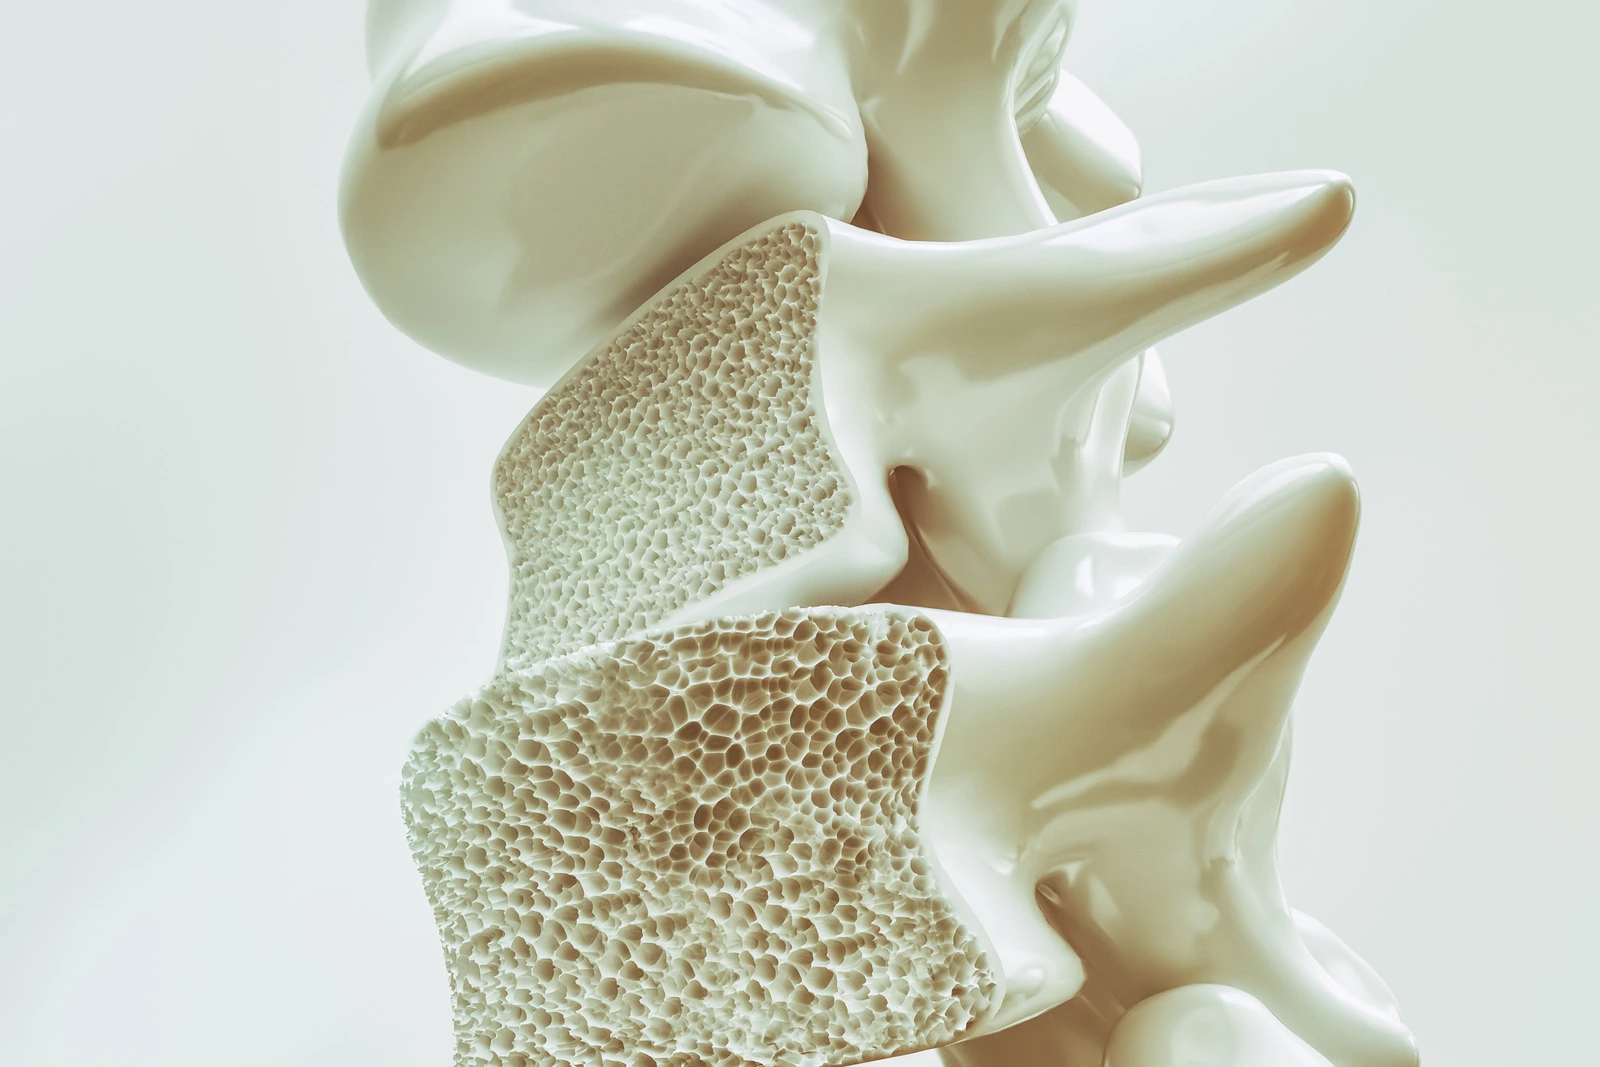 Cegah Osteoporosis, Patah Tulang Yang Bisa